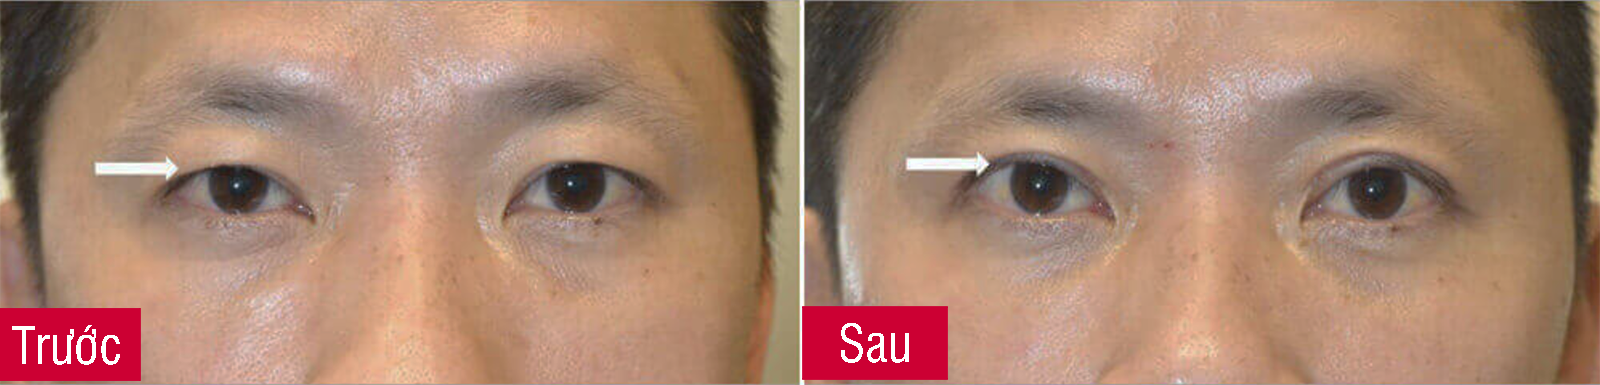 Bác sĩ thẩm mỹ cắt mỡ da thừa mí mắt - Hình ảnh trước và sau